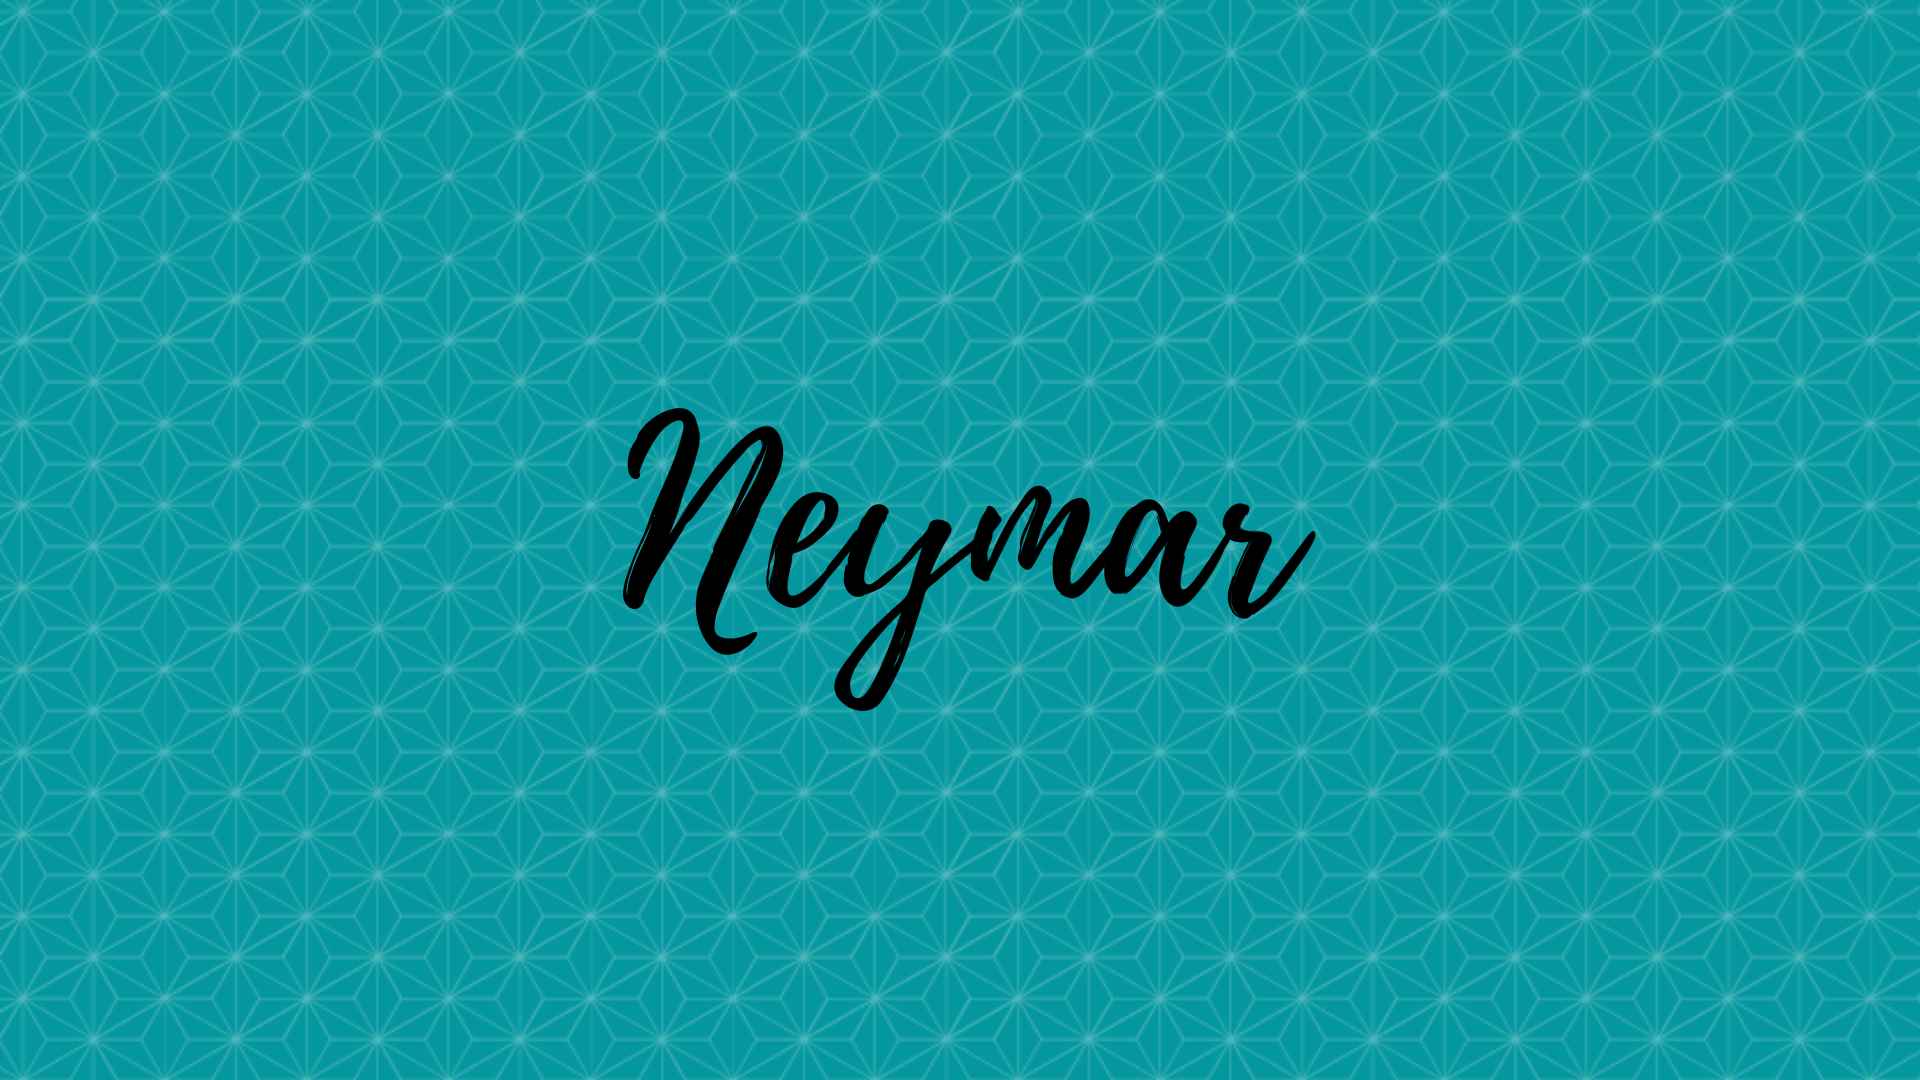 neymar